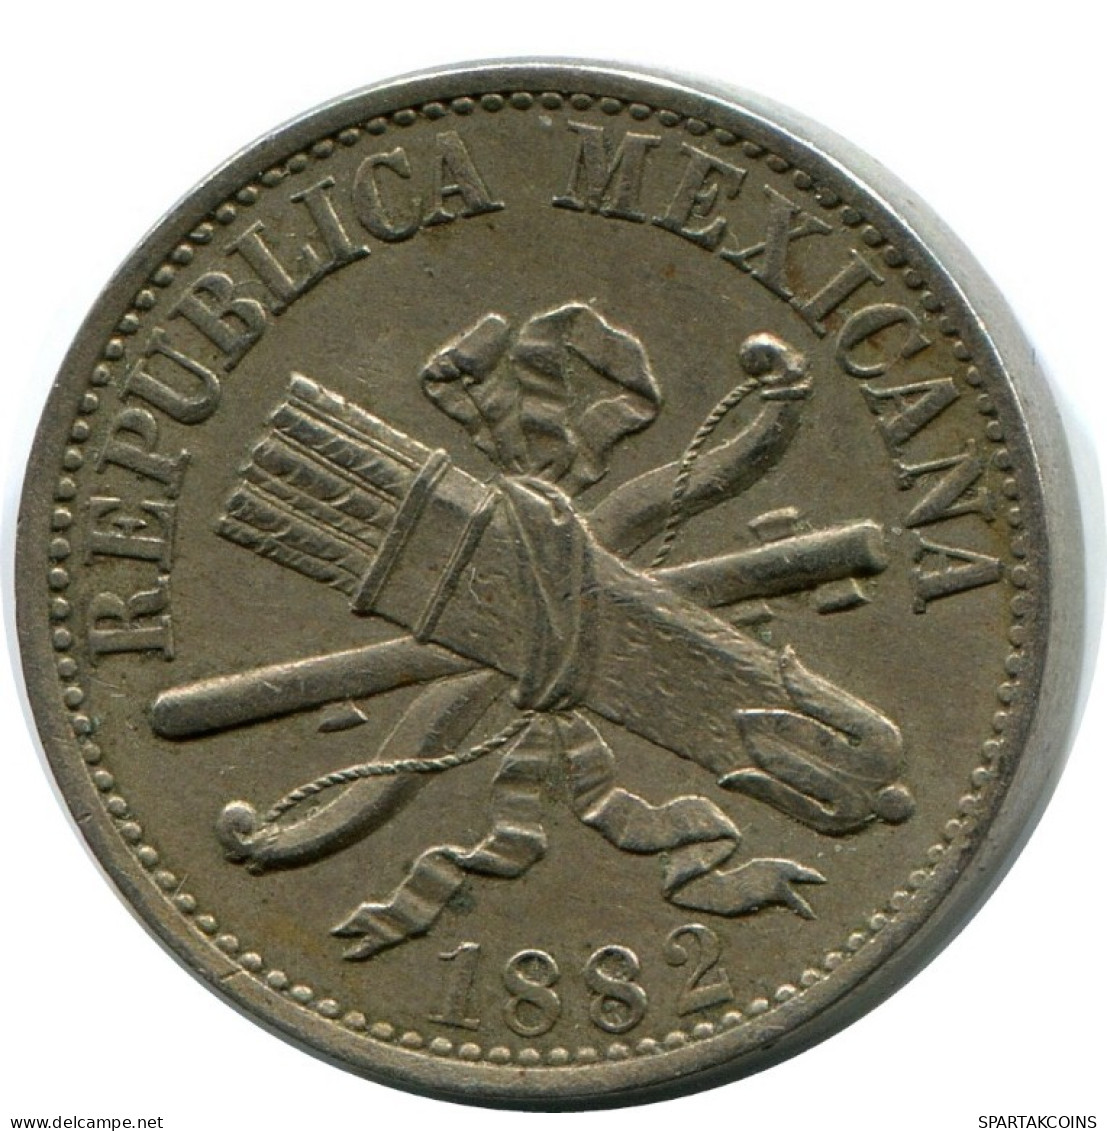 V(5)CENTAVOS 1882 MEXICO Moneda #AH394.5.E.A - Messico